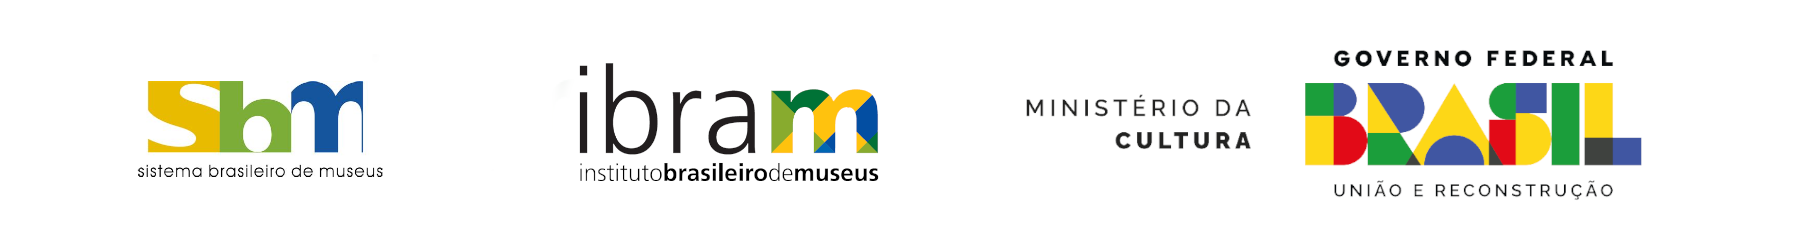 Barra de Logos com as imagens do Sistema Brasileiro de Museus, o Instituto Brasileiro de Museus e o Ministério da Cultura, seguido da Logo do Governo Federal com o slogan "União e Reconstrução"